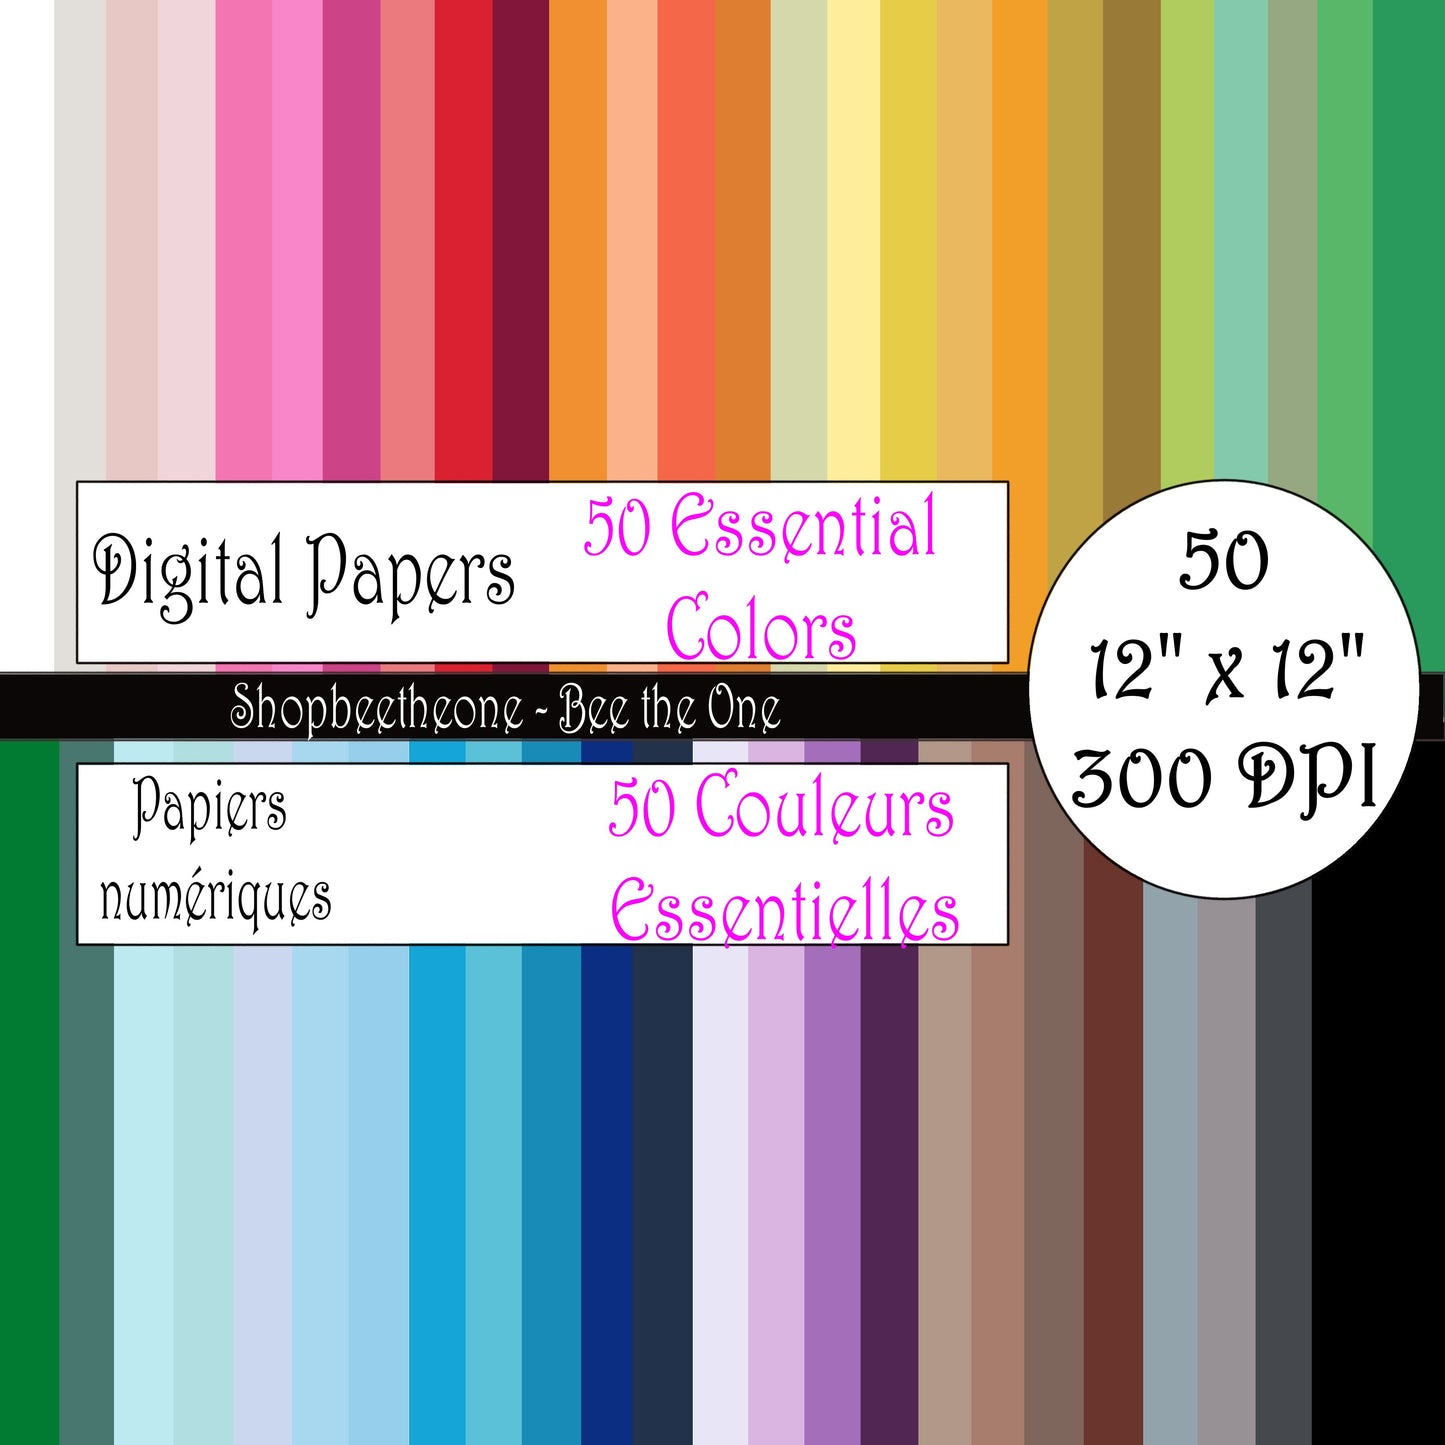 Papiers numériques "50 Couleurs essentielles" - 12" x 12" - 300 DPI - Set de 50 images - A télécharger